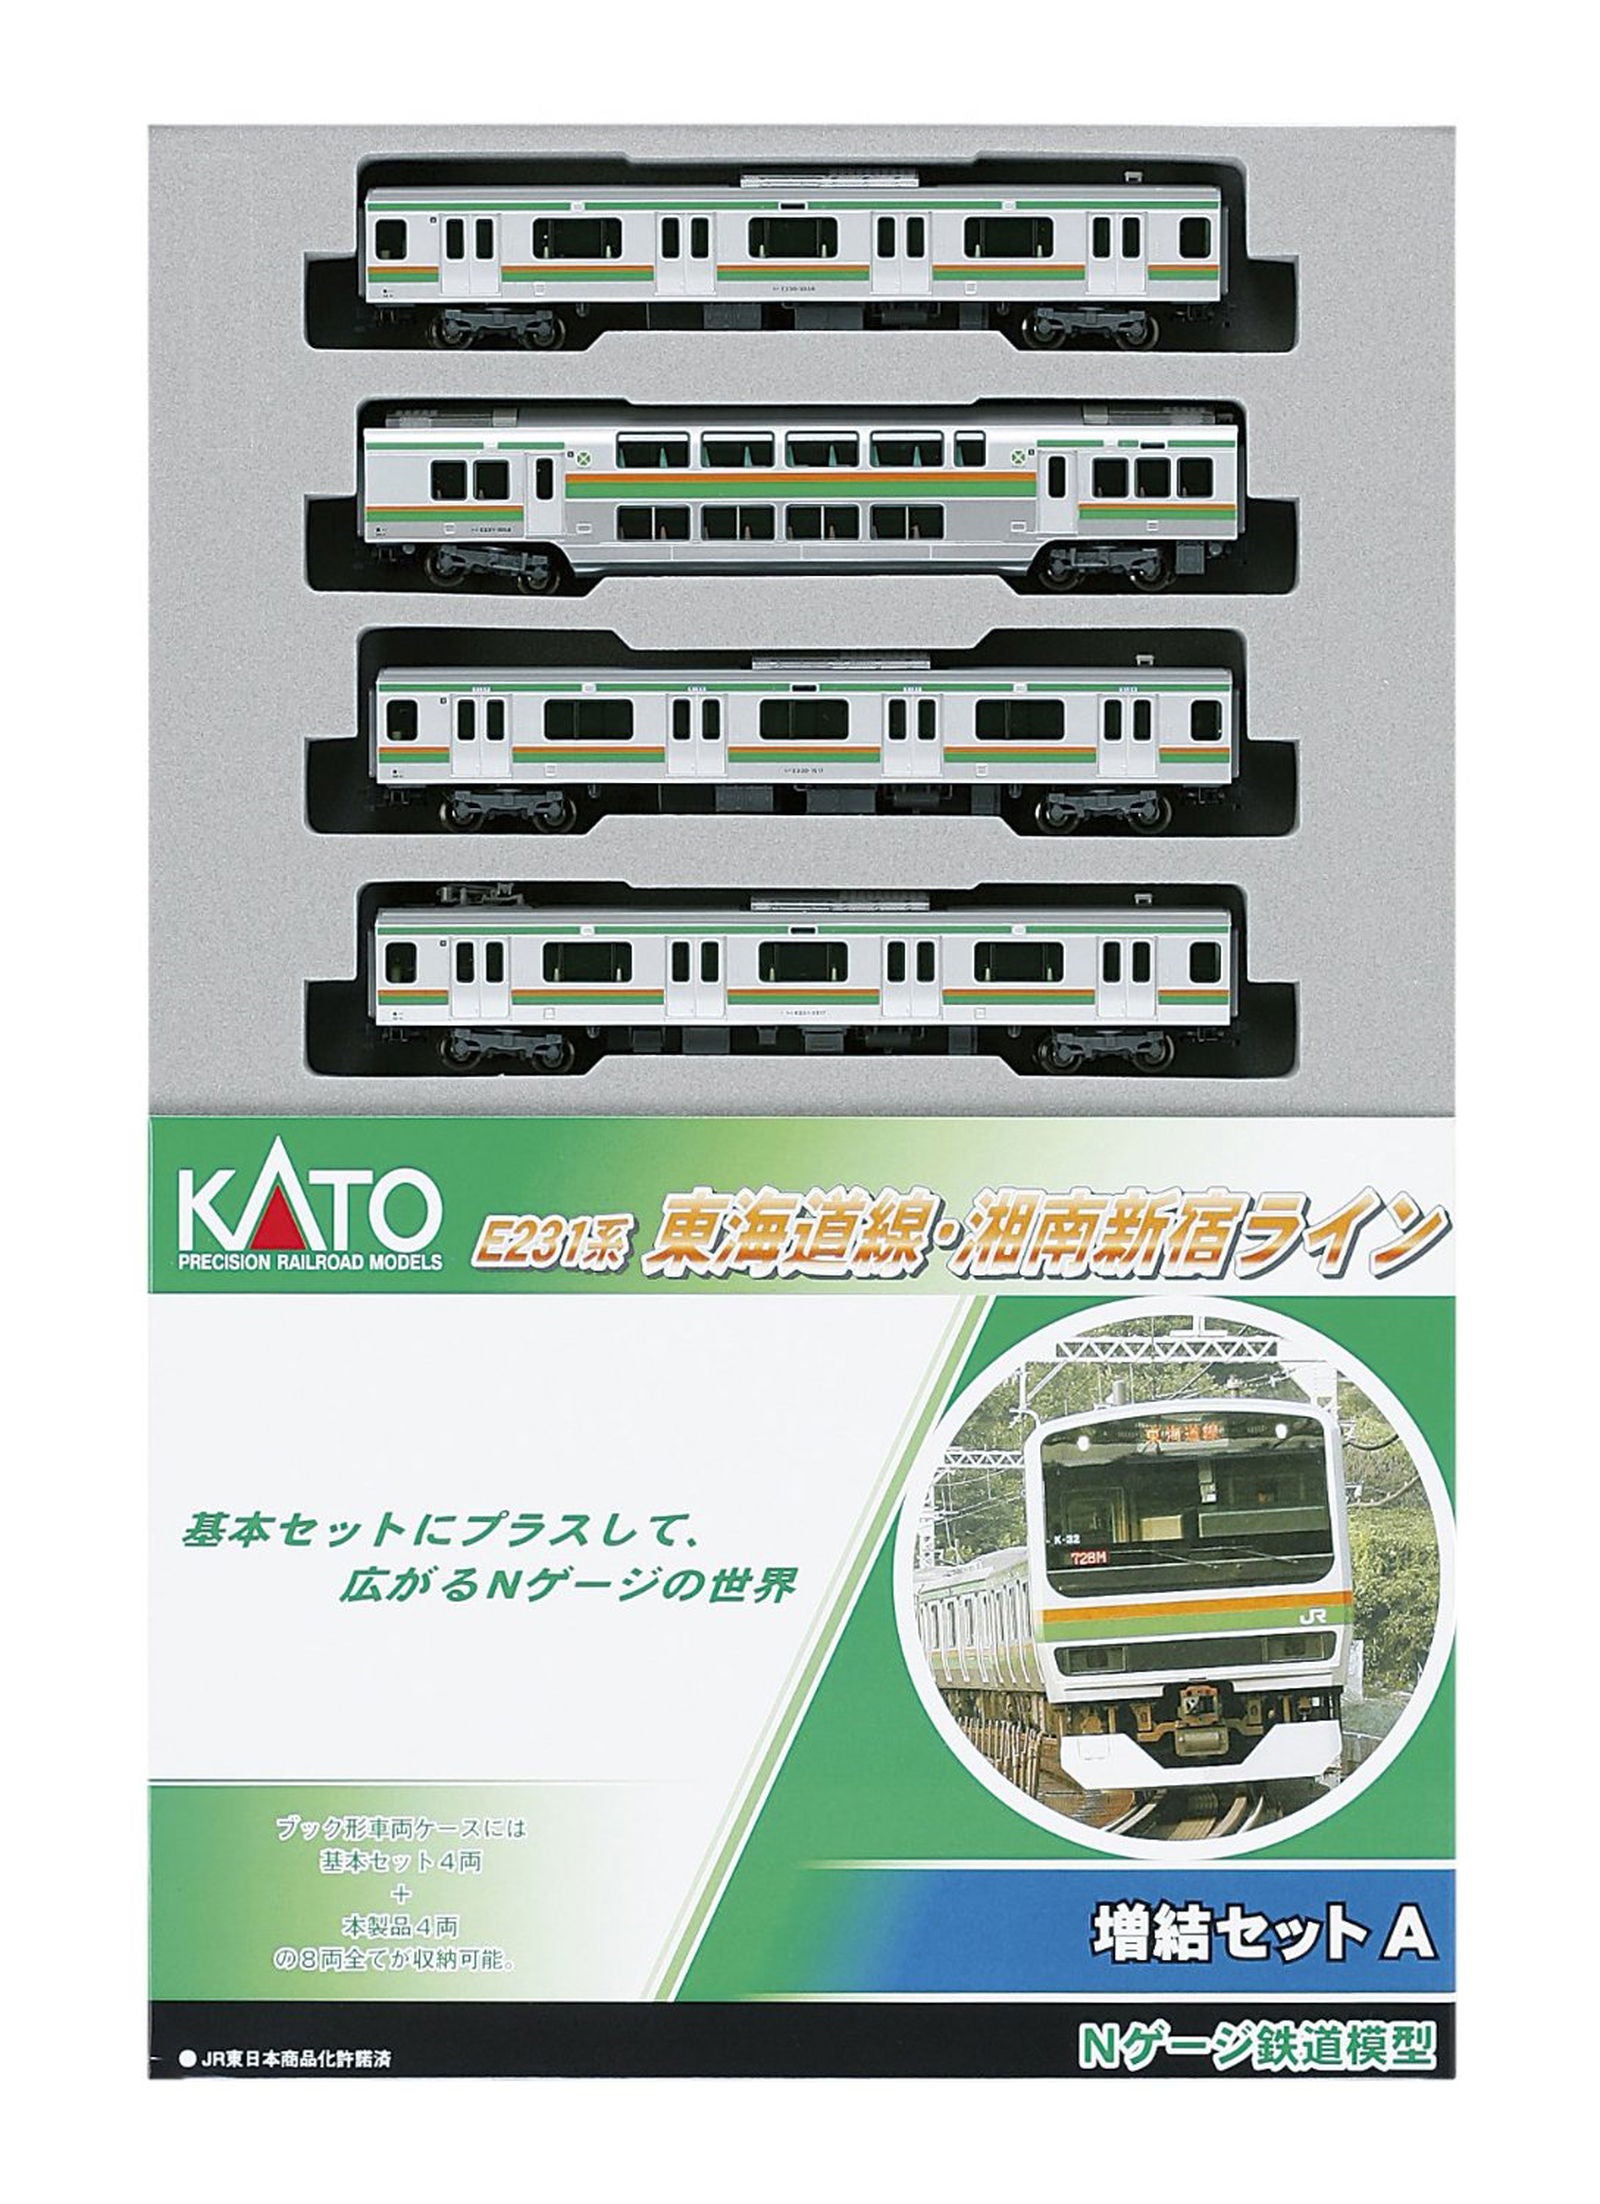 KATO 10-595 Series E231 Tokaido / Shonan-Shinjuku Line Add-On 4 Car - BanzaiHobby